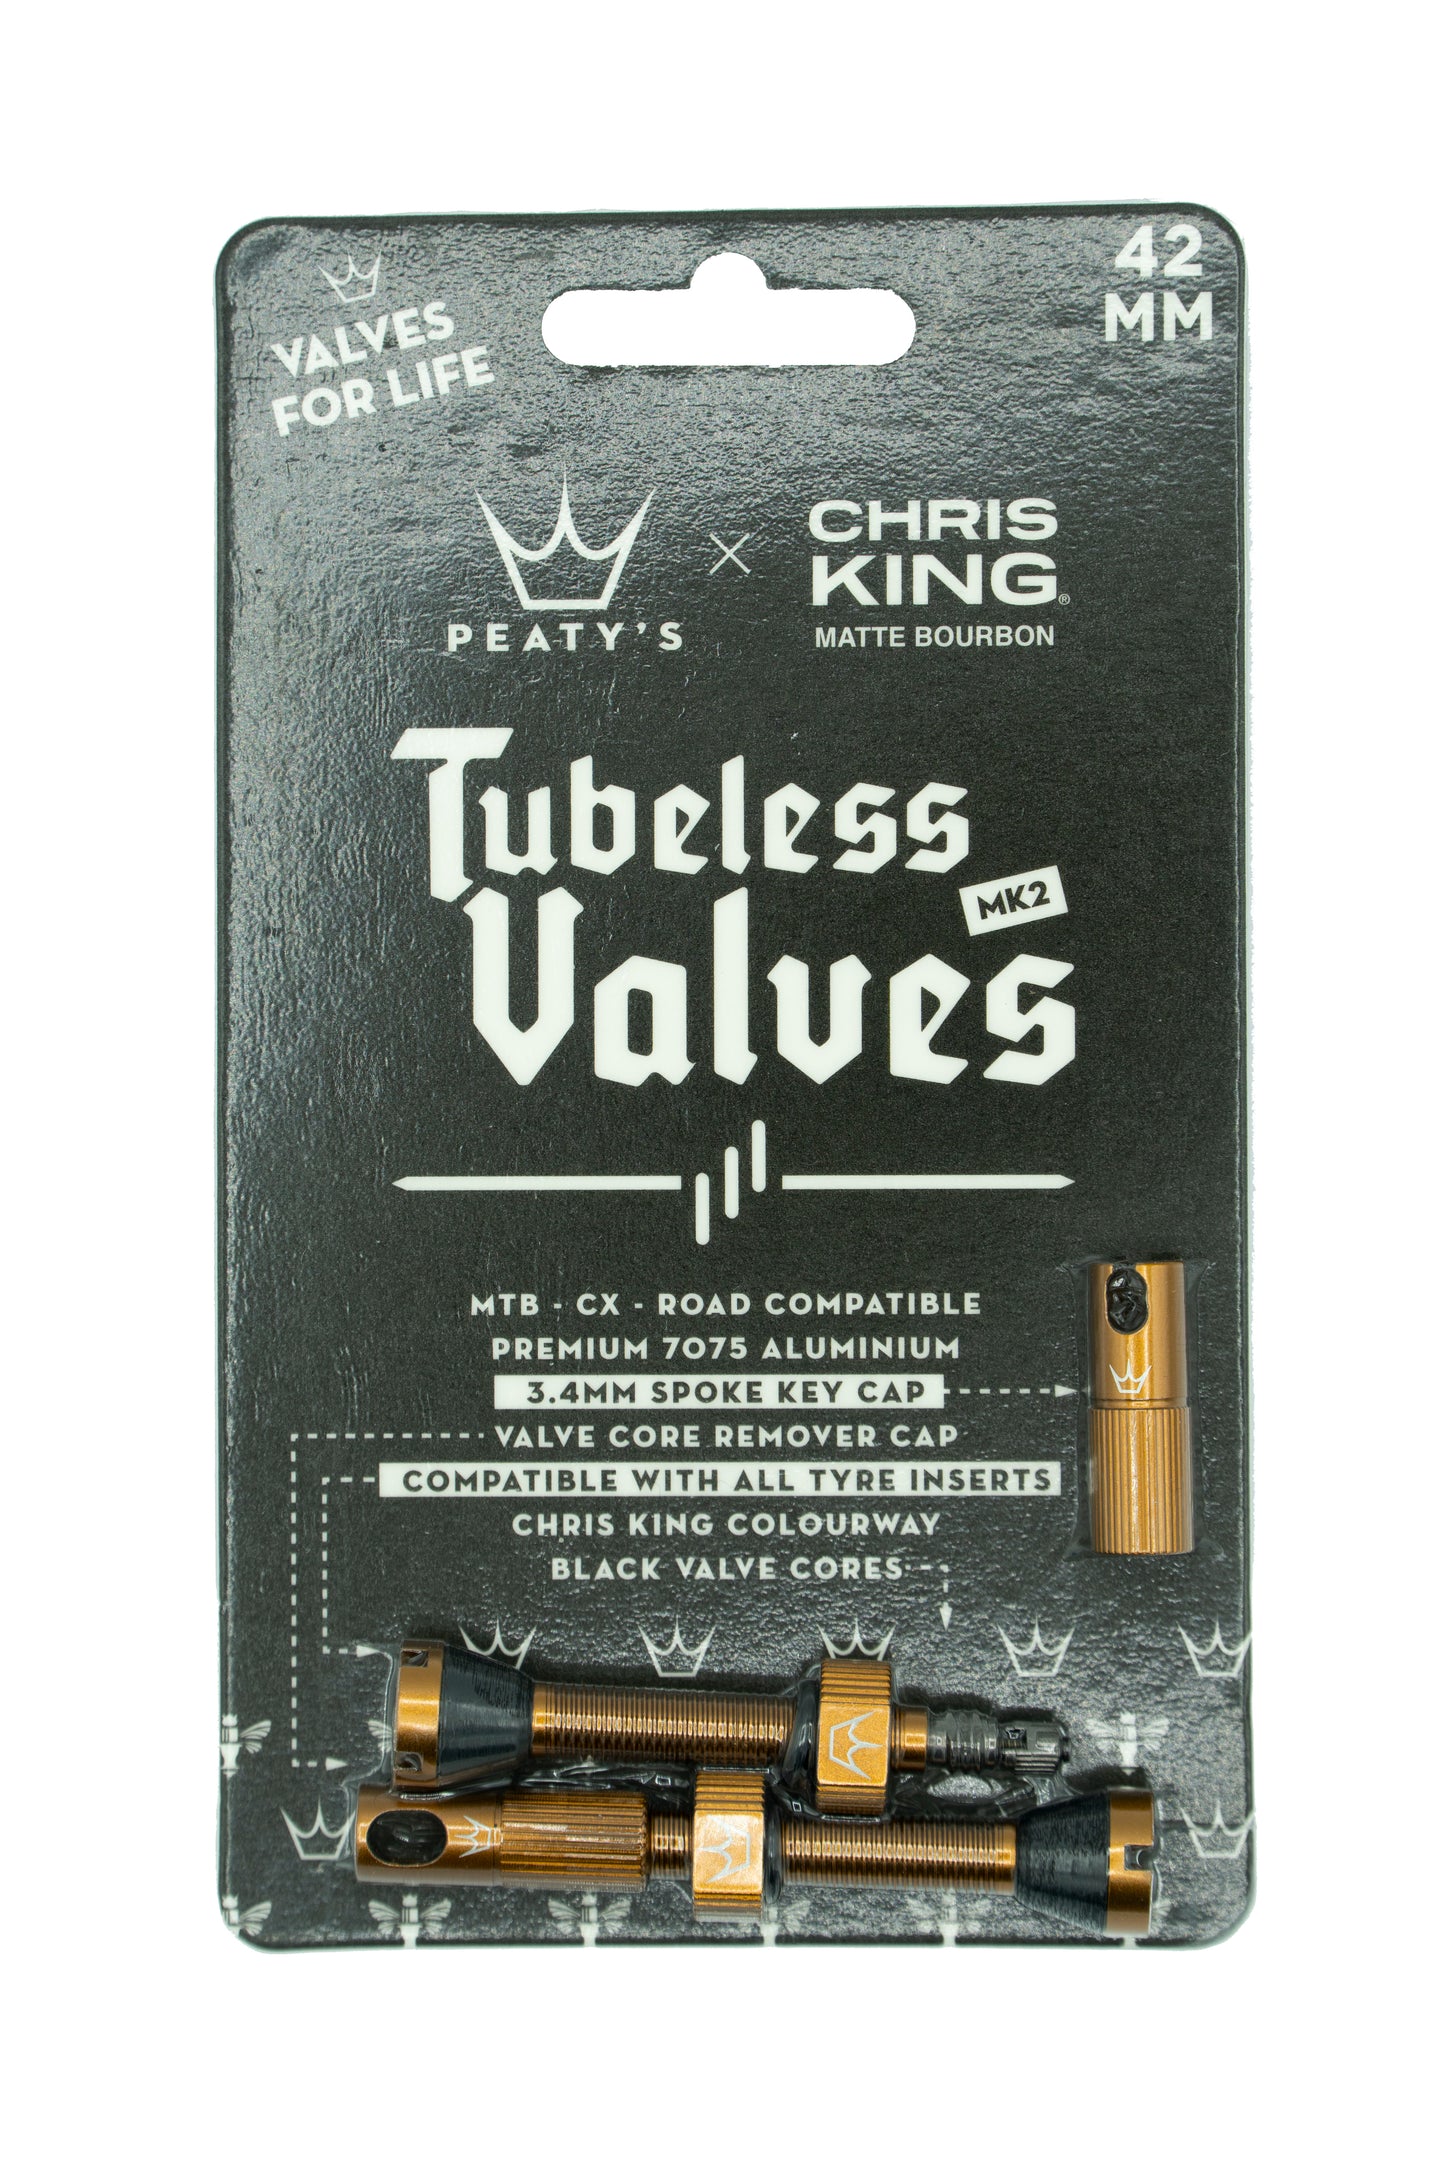 Peaty's Chris King Tubeless valves MK2 Bourbon - 42mm